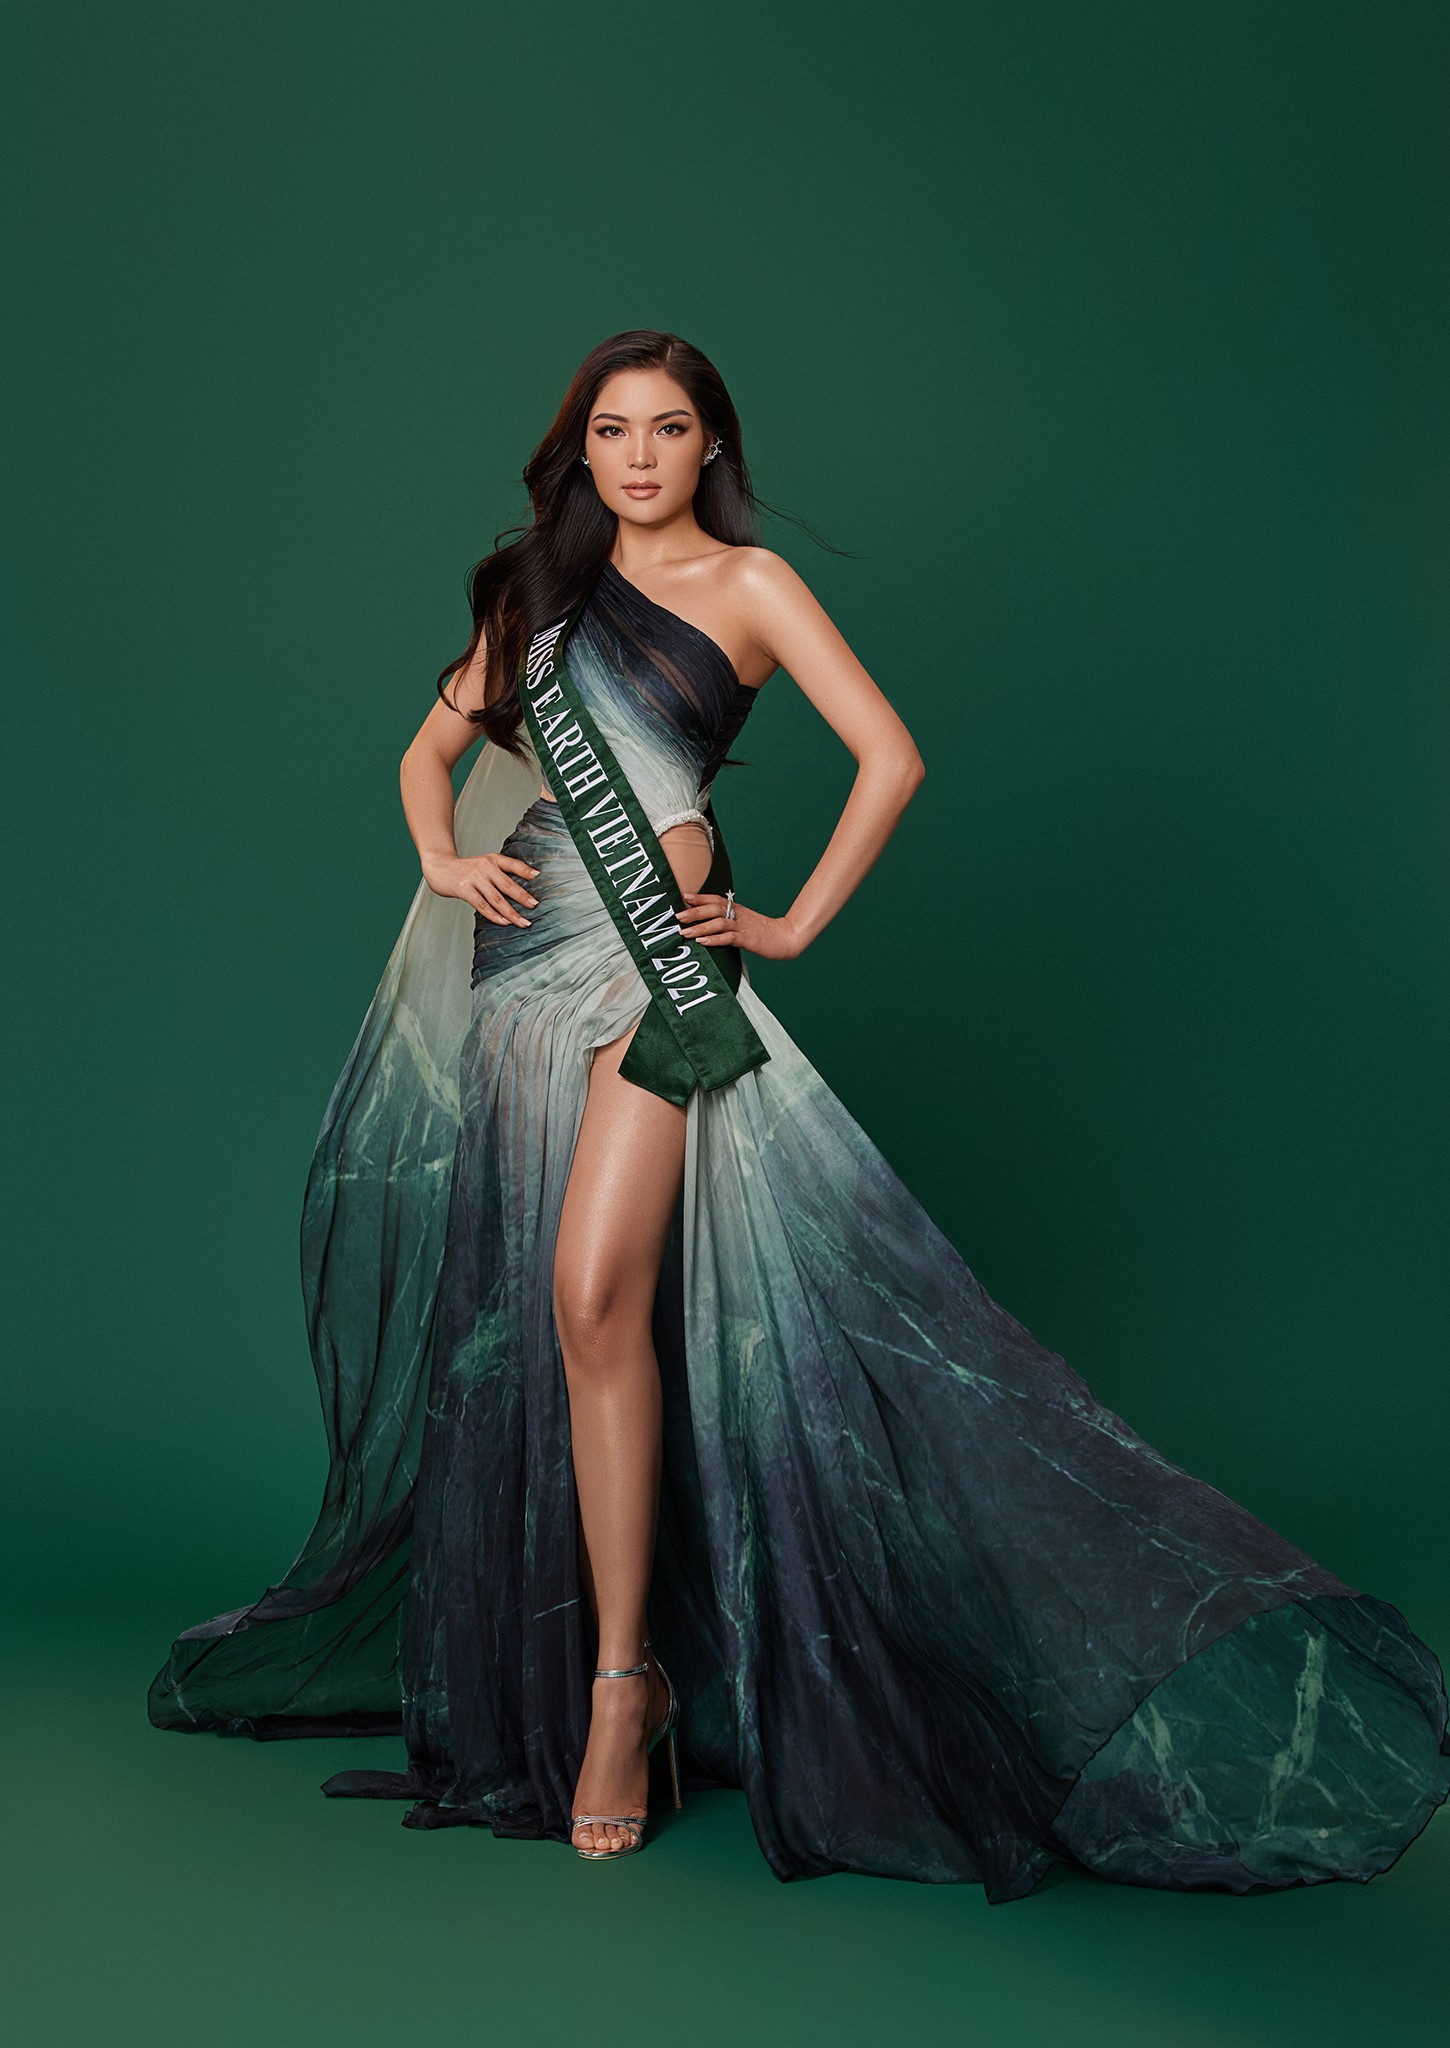 Thí sinh Hoa hậu Trái đất Việt Nam được chọn thi Miss Earth 2021 - Ảnh 1.